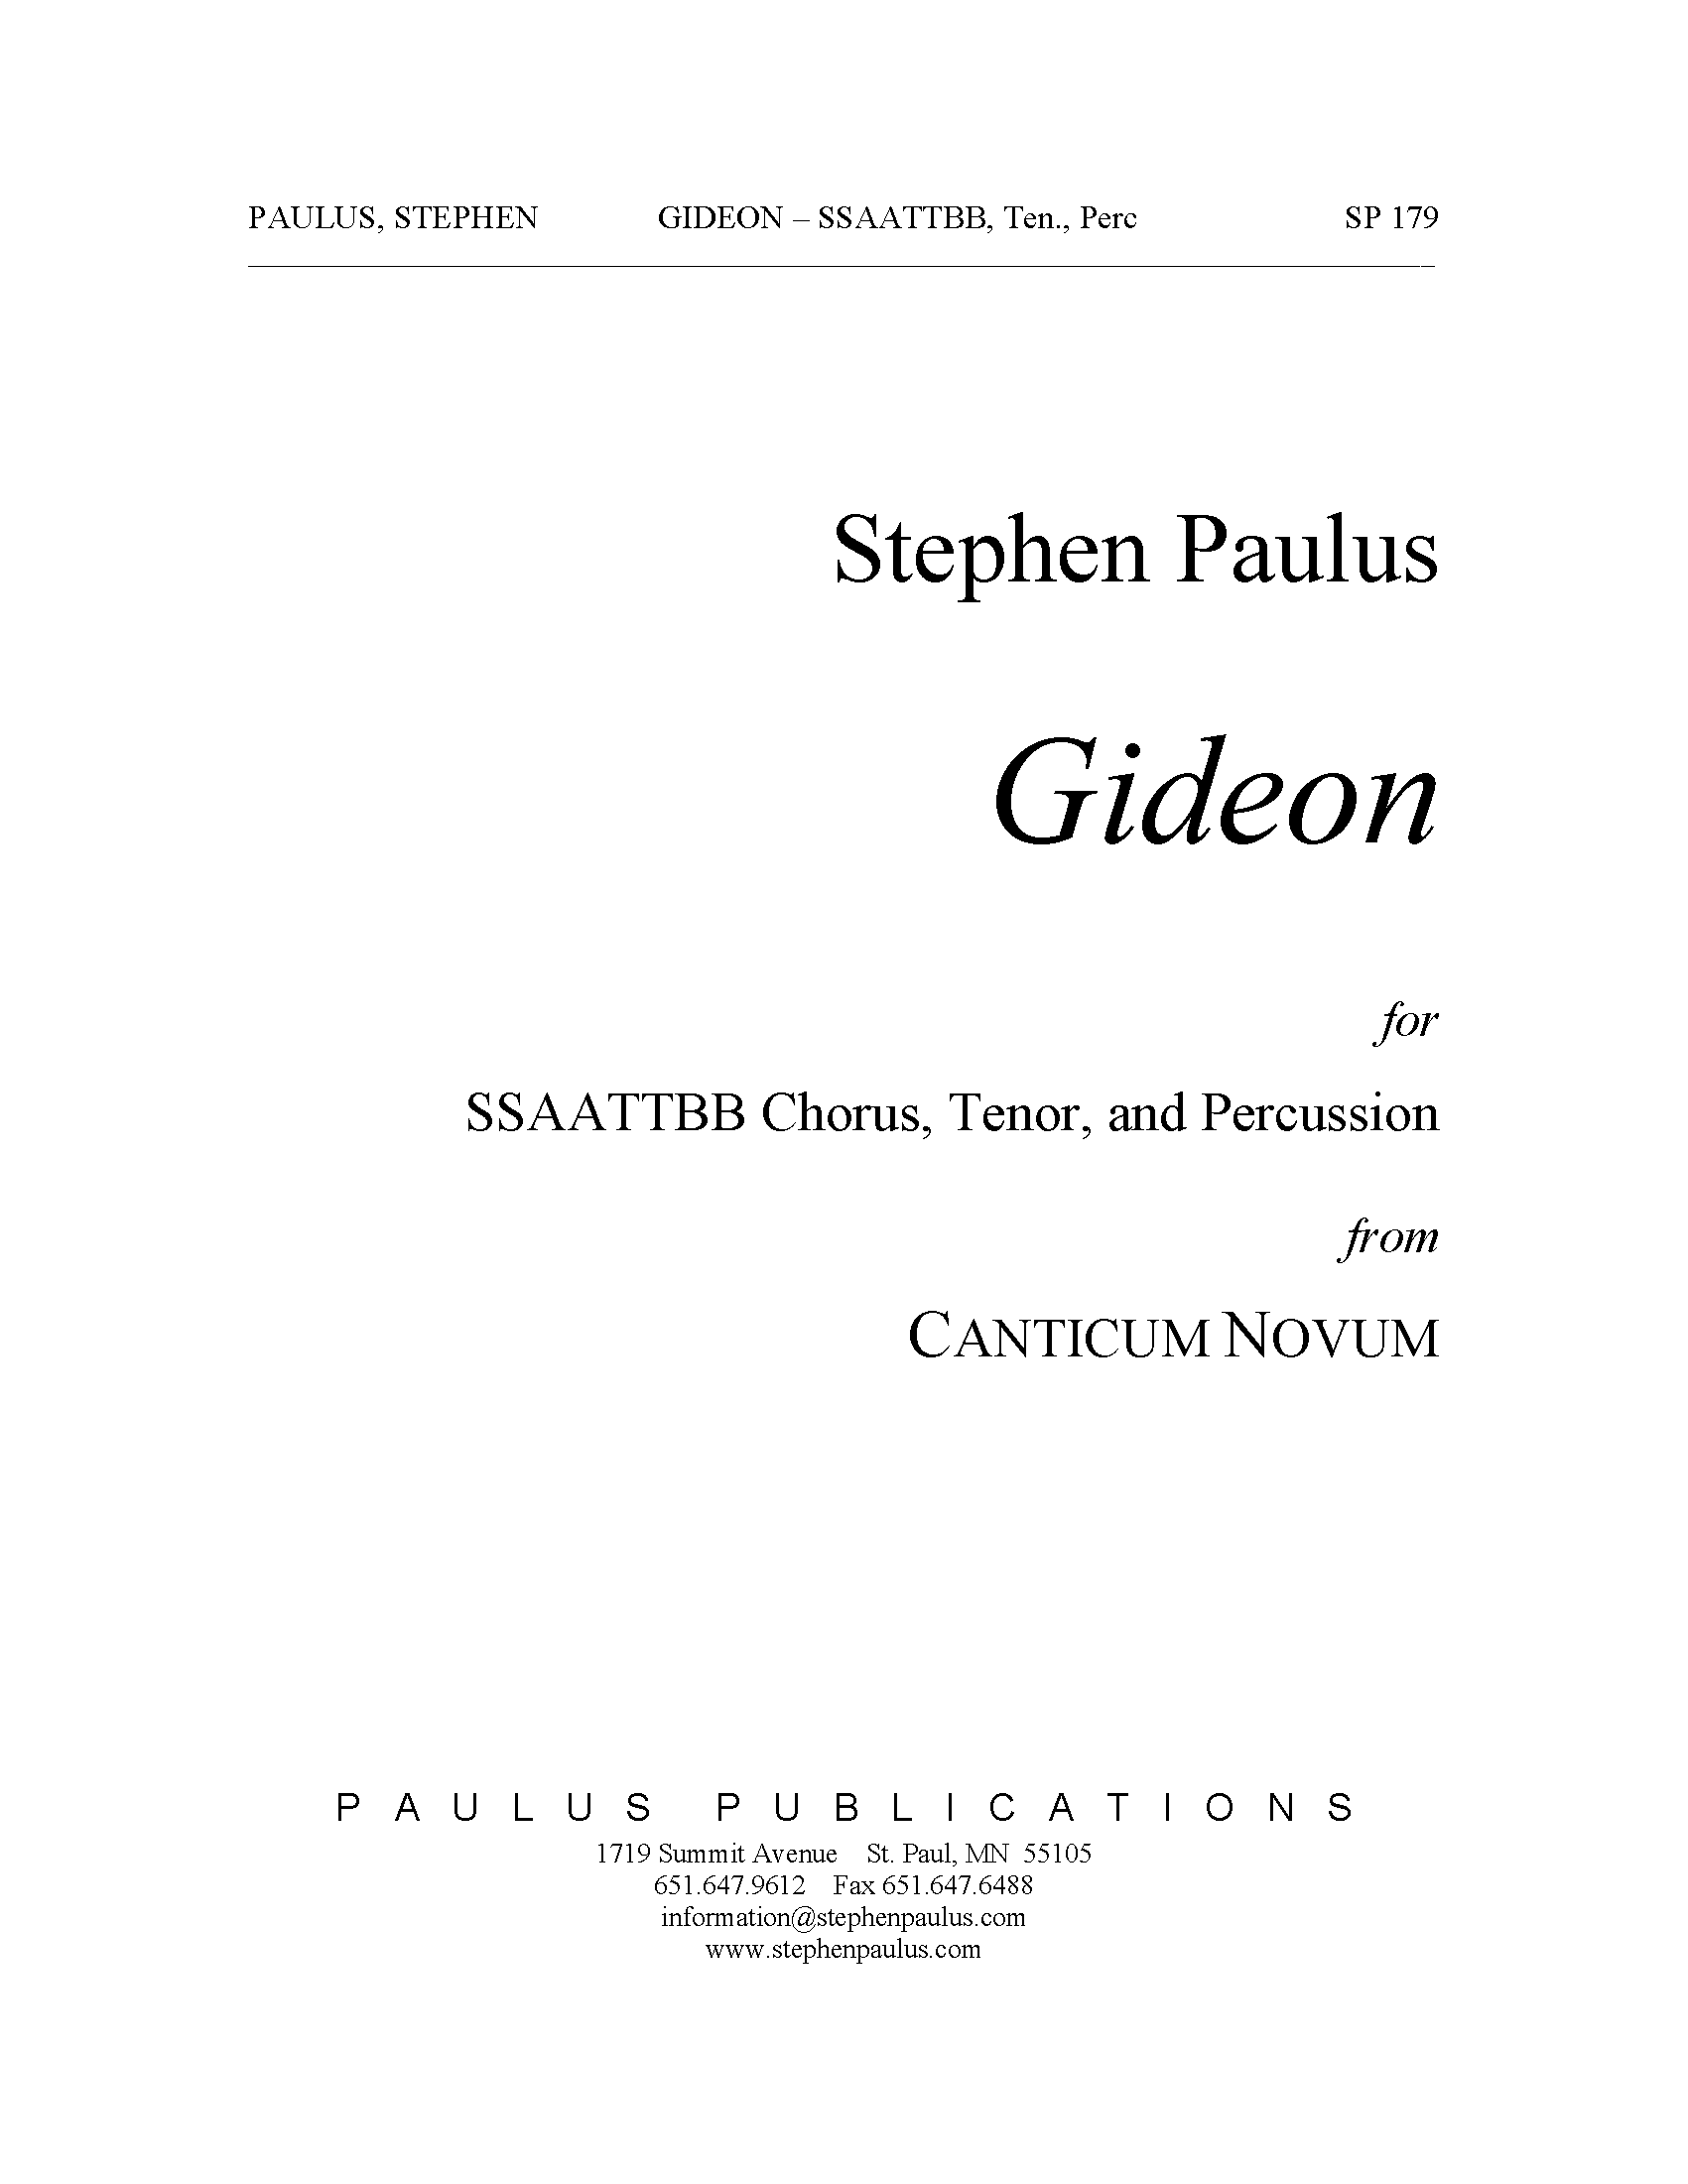 Gideon (from Canticum Novum) for SSAATTBB Chorus, Tenor & Percussion